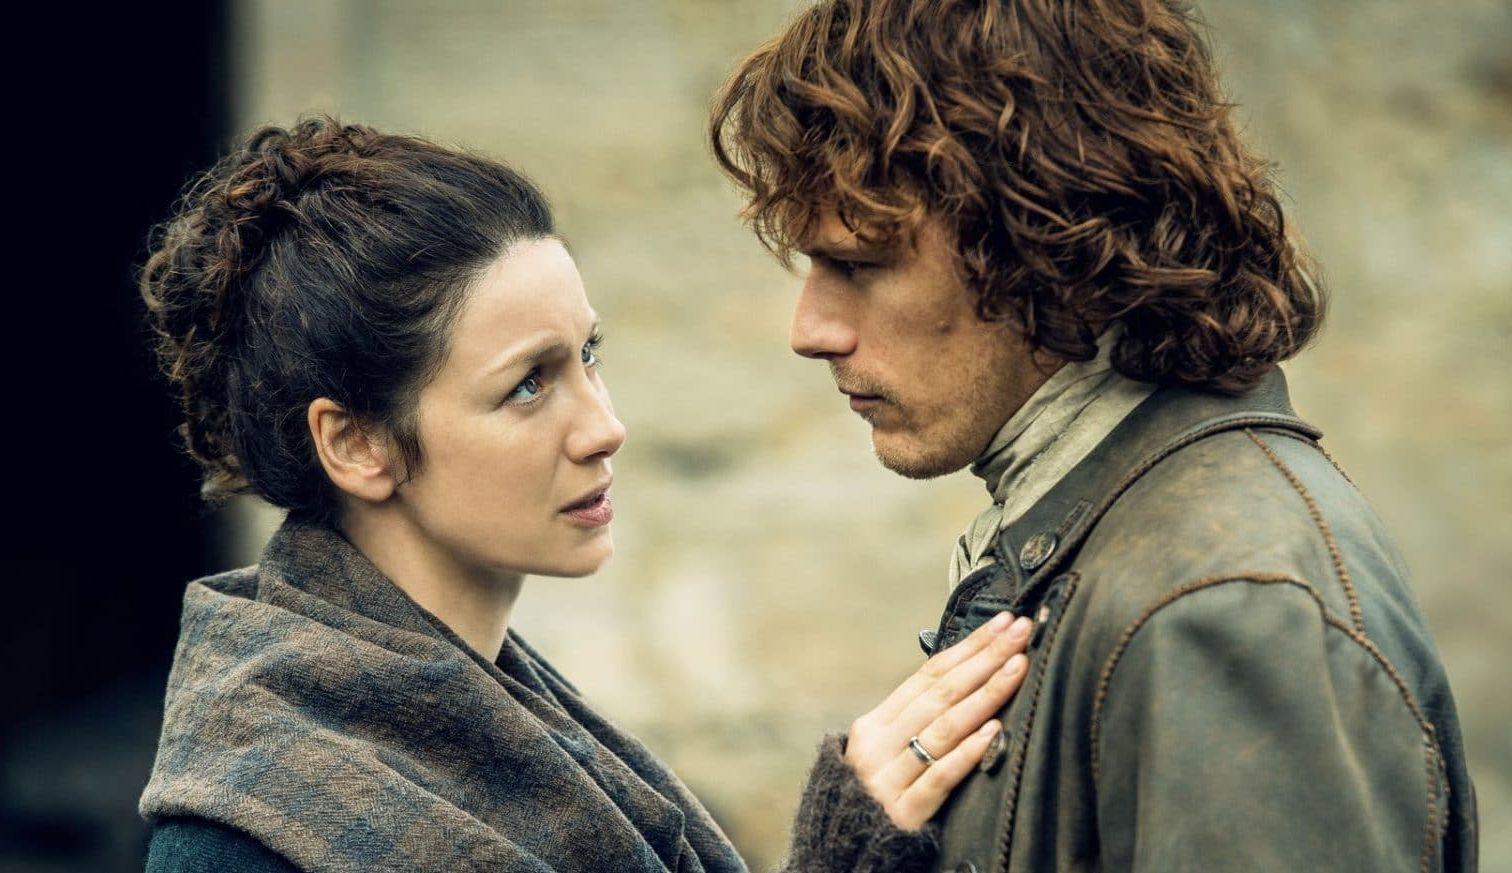 Ops! Canal exibe episódio de Outlander com legendas eróticas